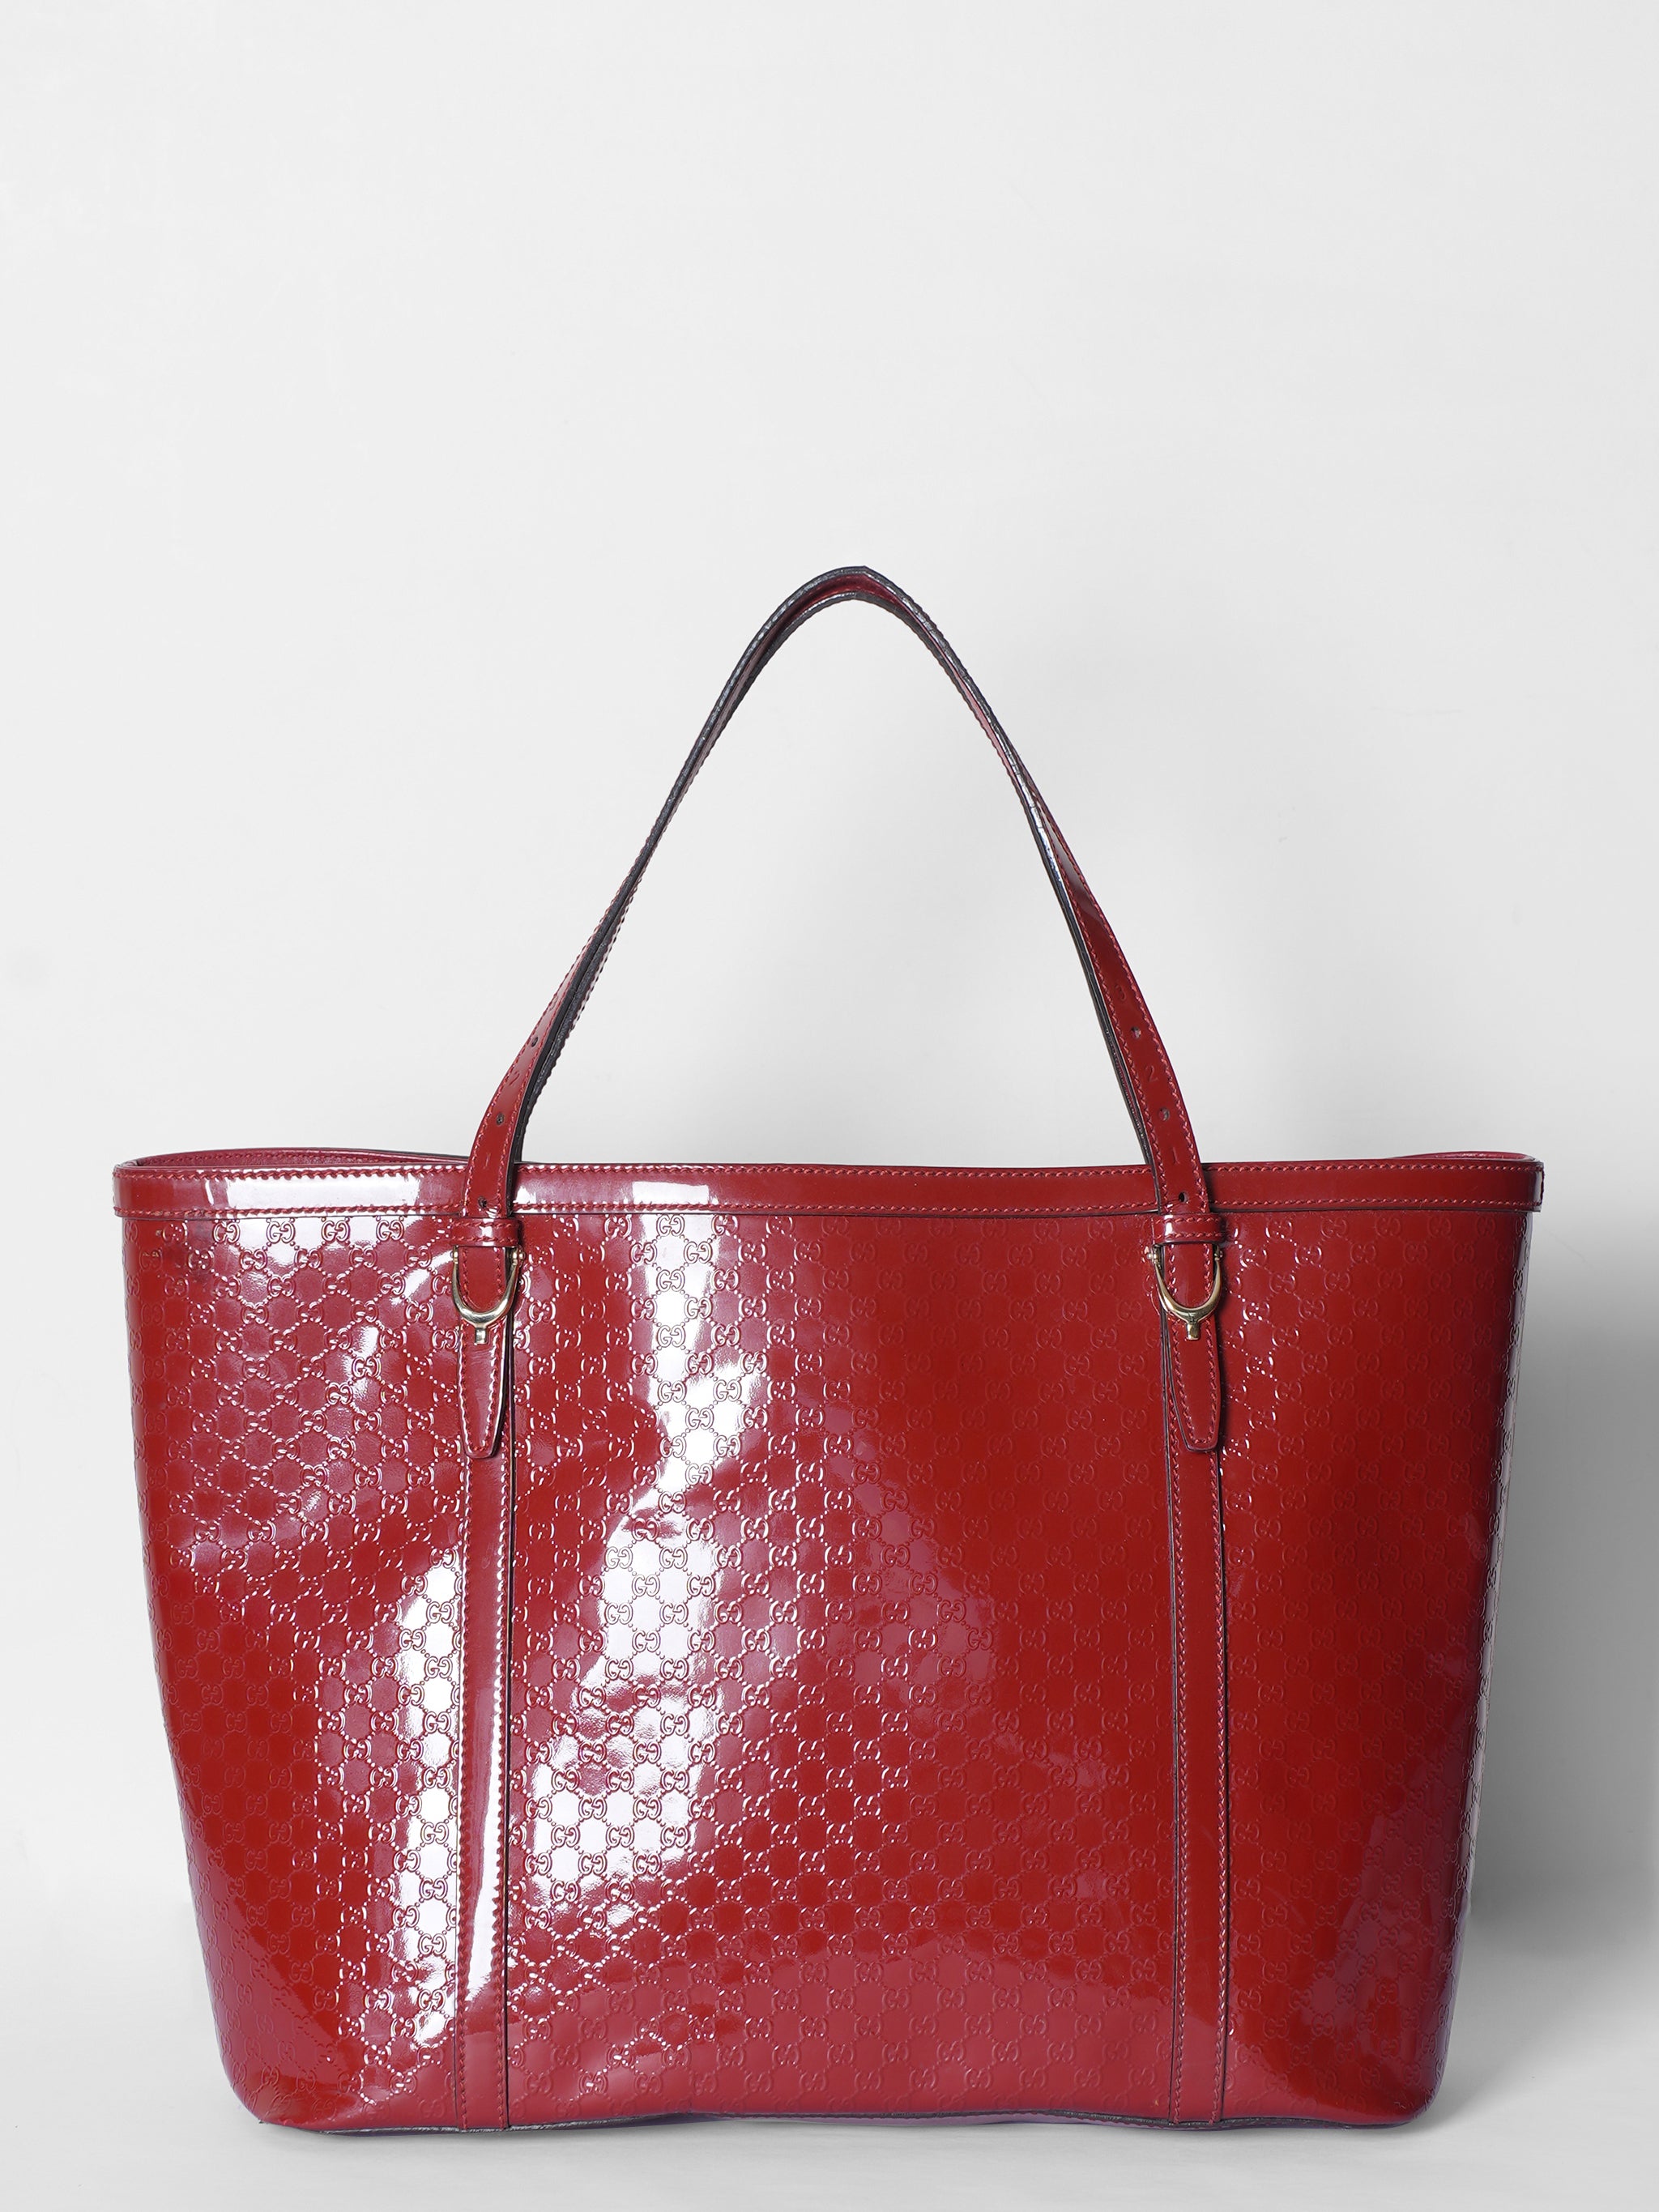 Gucci Red Micro Guccissima Patent Leather Tote Bag